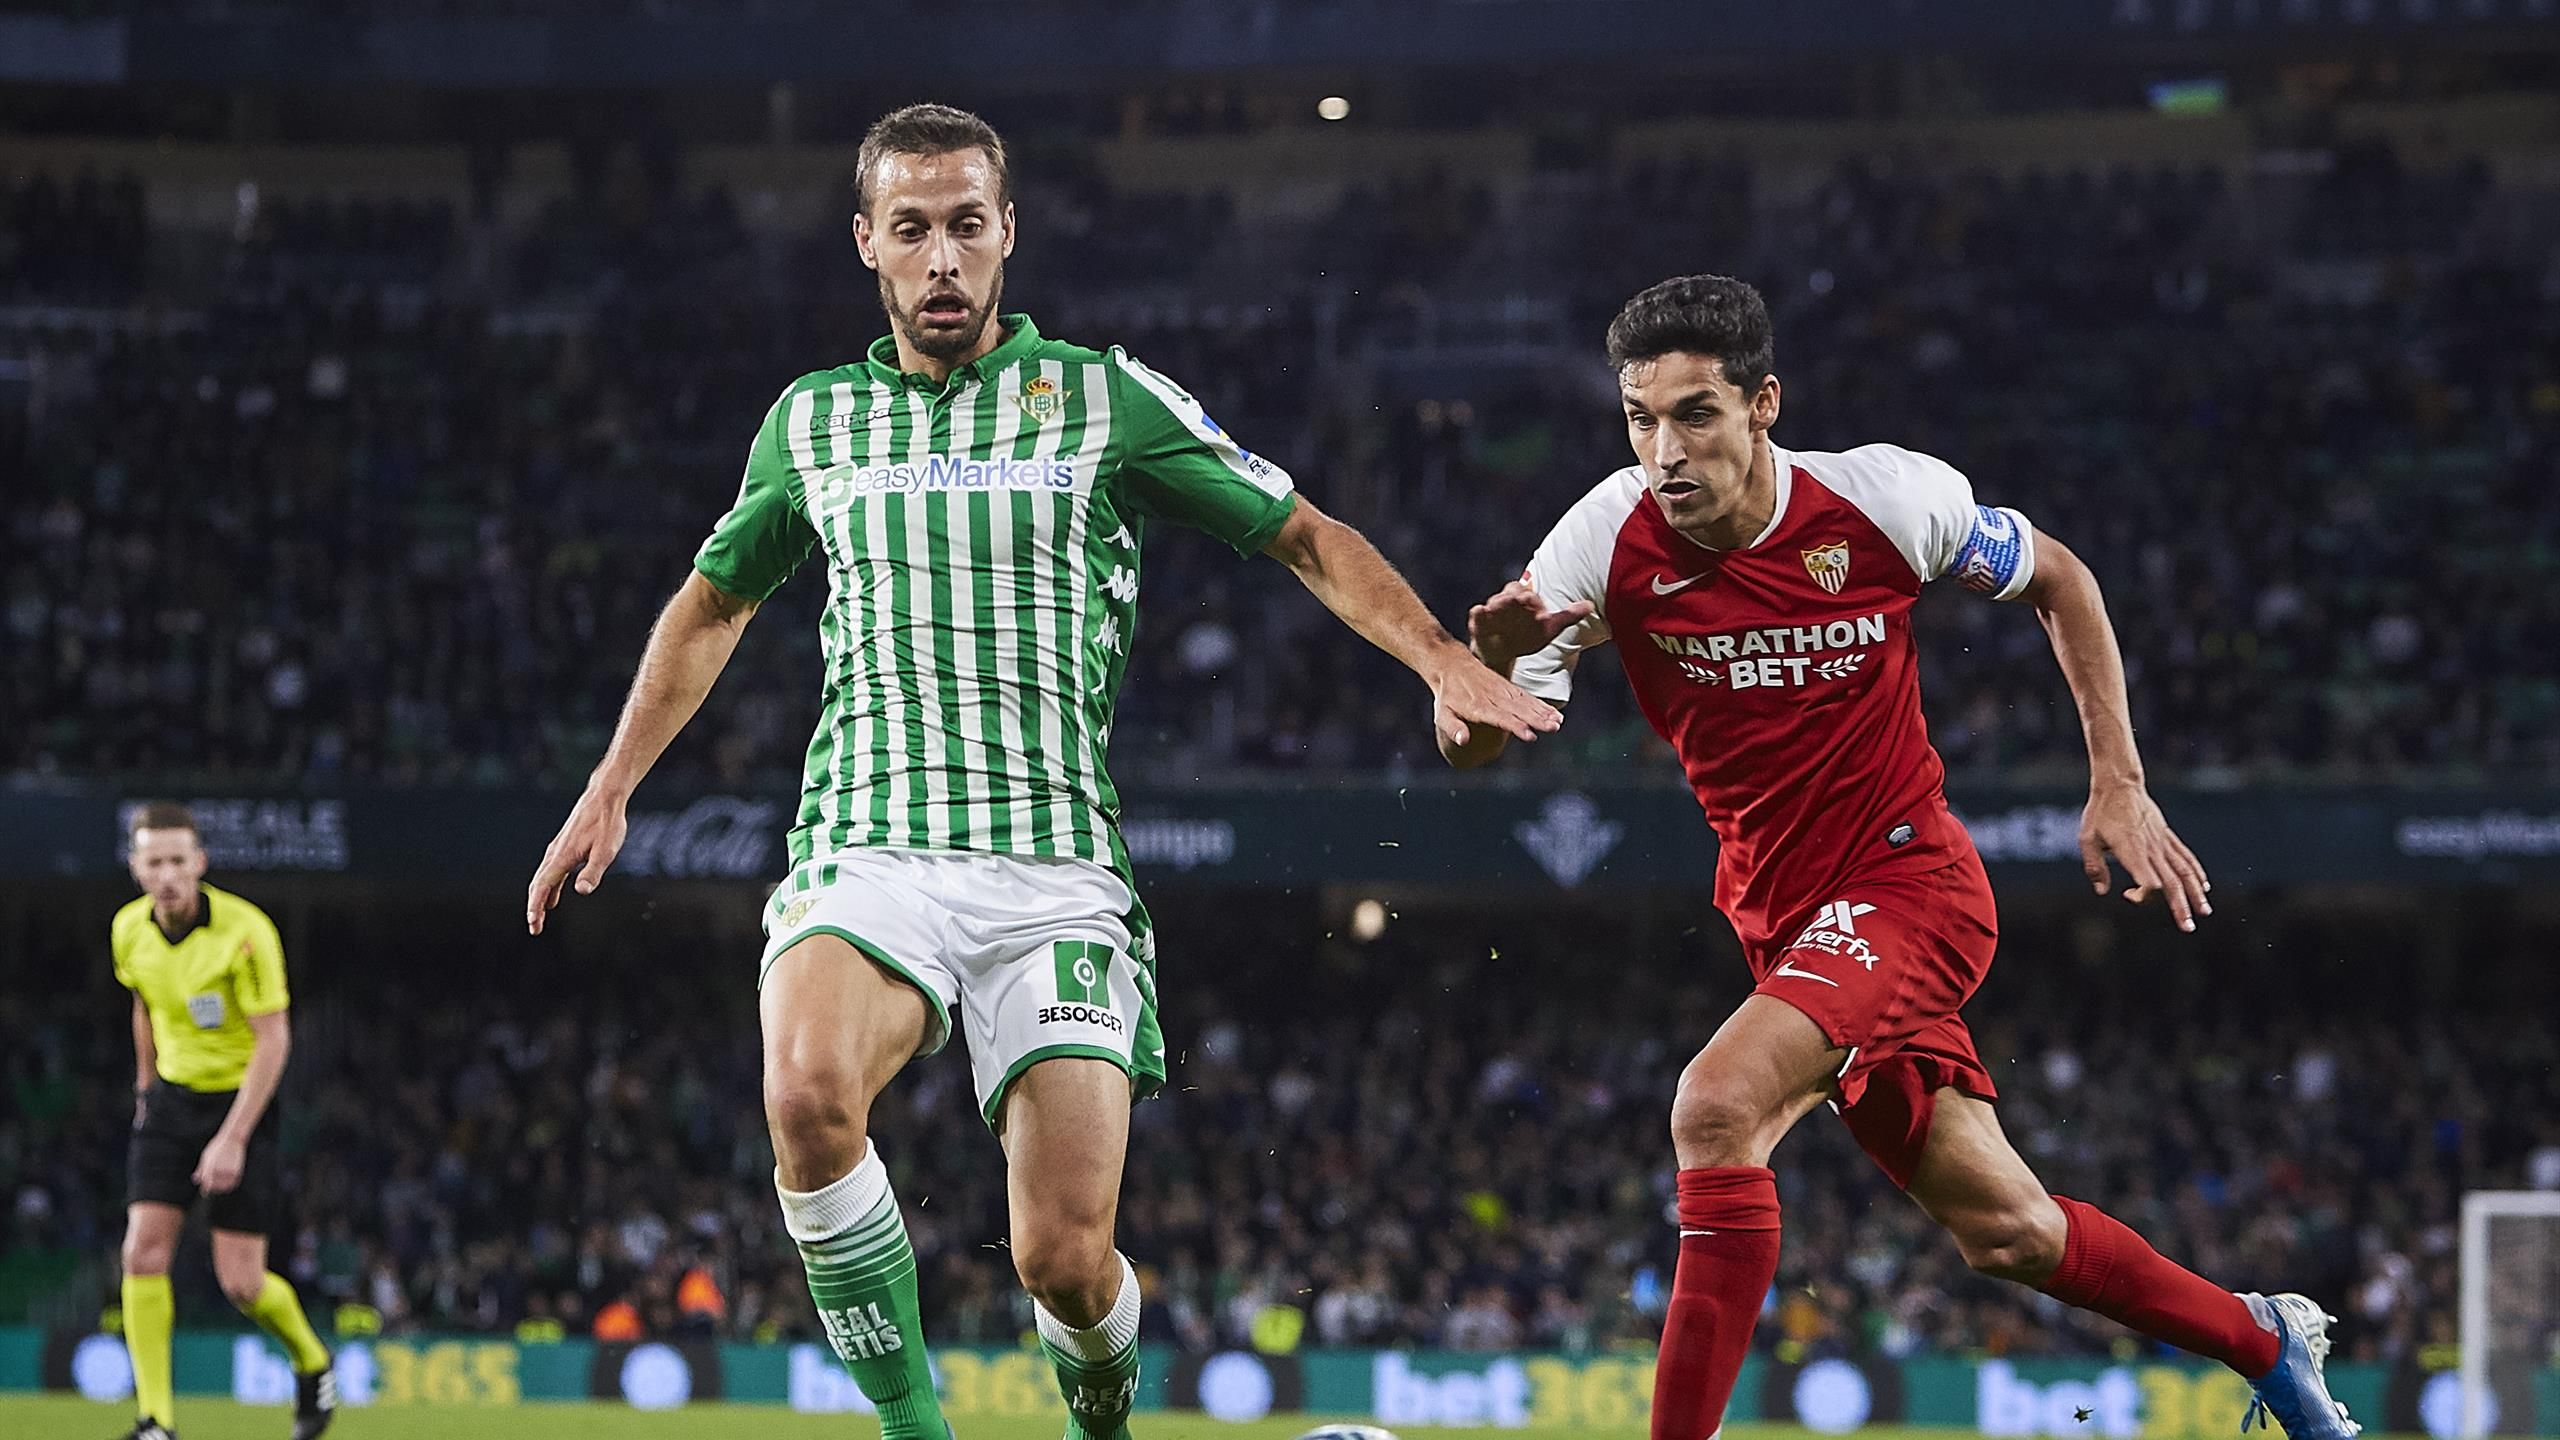 Sevilla-Betis, en vivo - partido - Resultado directo hoy - Eurosport